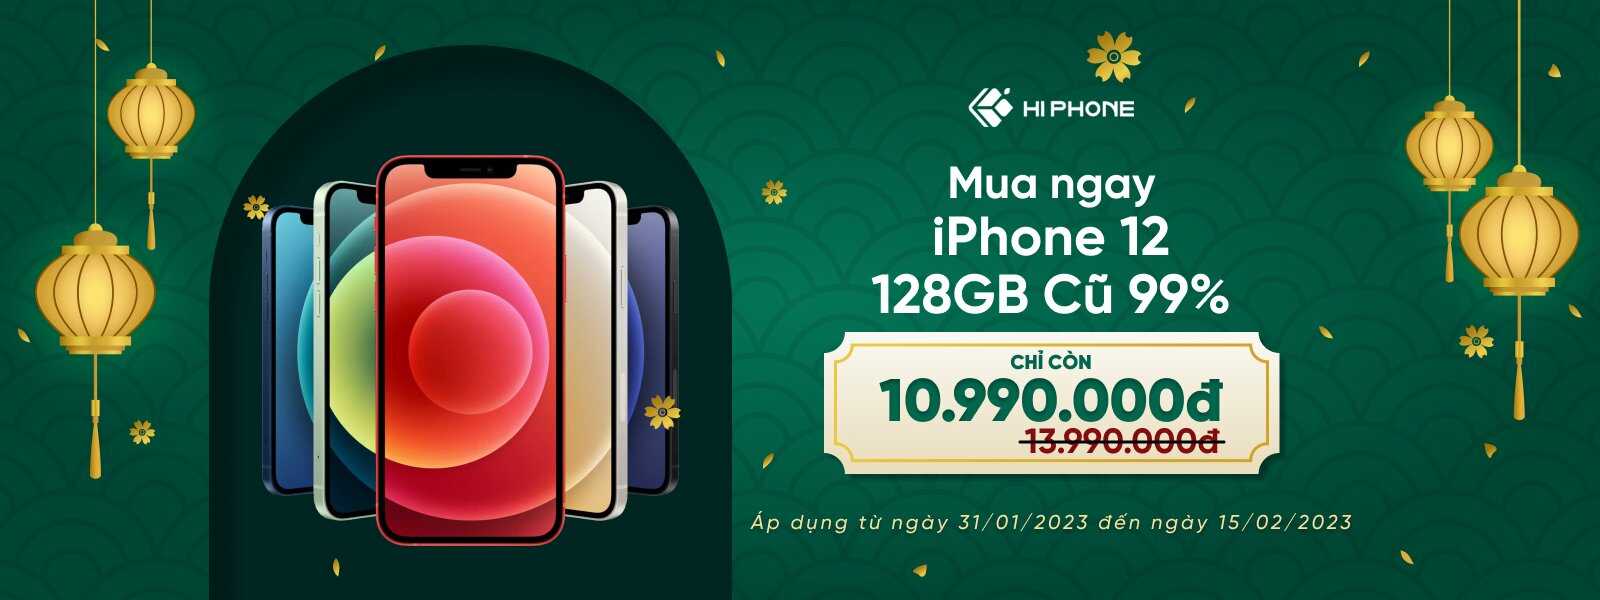 apple iphone 12 128gb cũ 99 giá rẻ